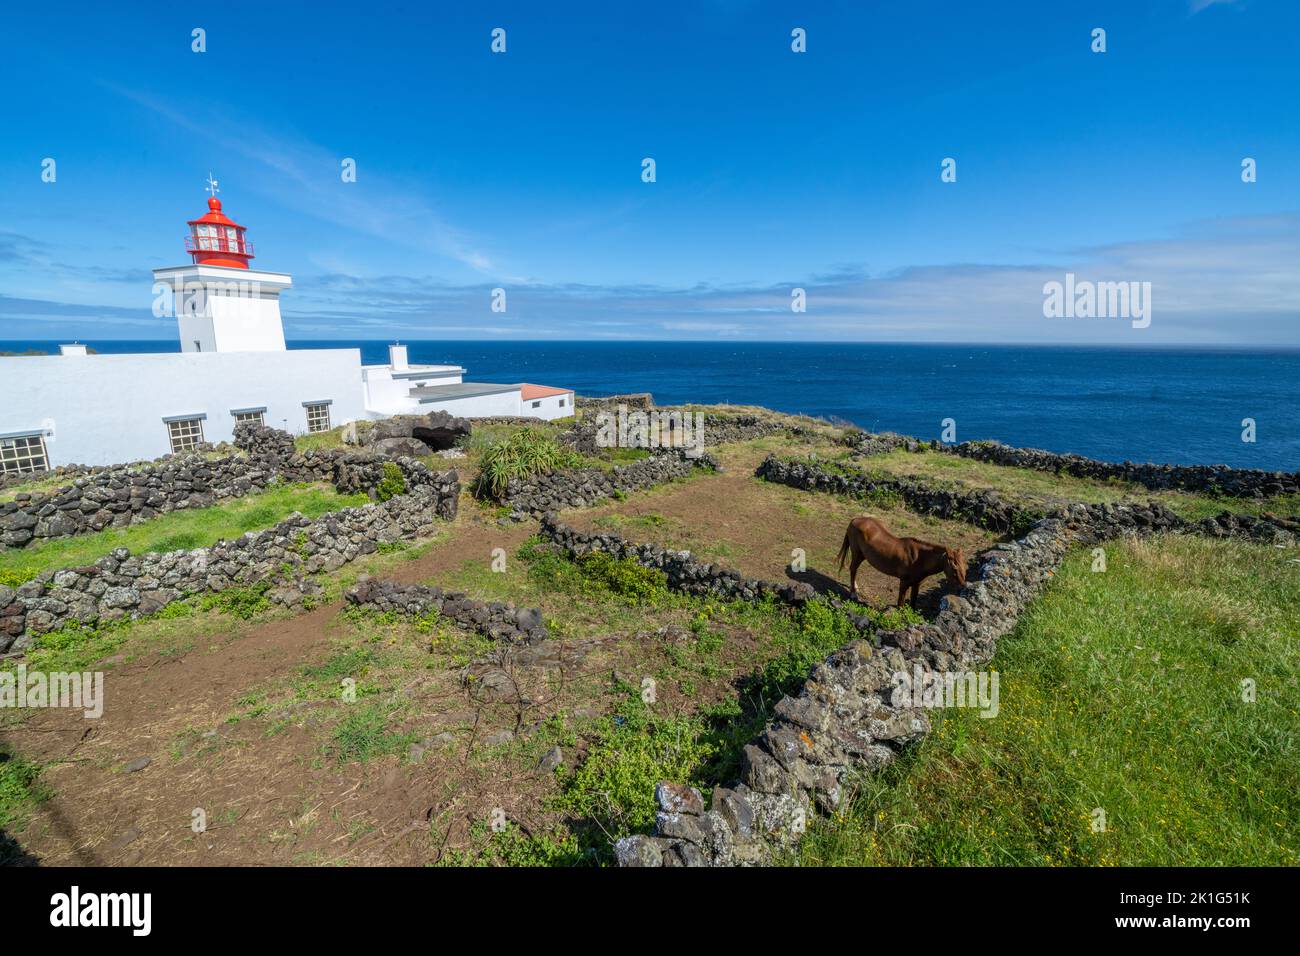 Le phare de Ponta das Contendas et un cheval sur l'île de Terceira, Açores, Portugal. Banque D'Images